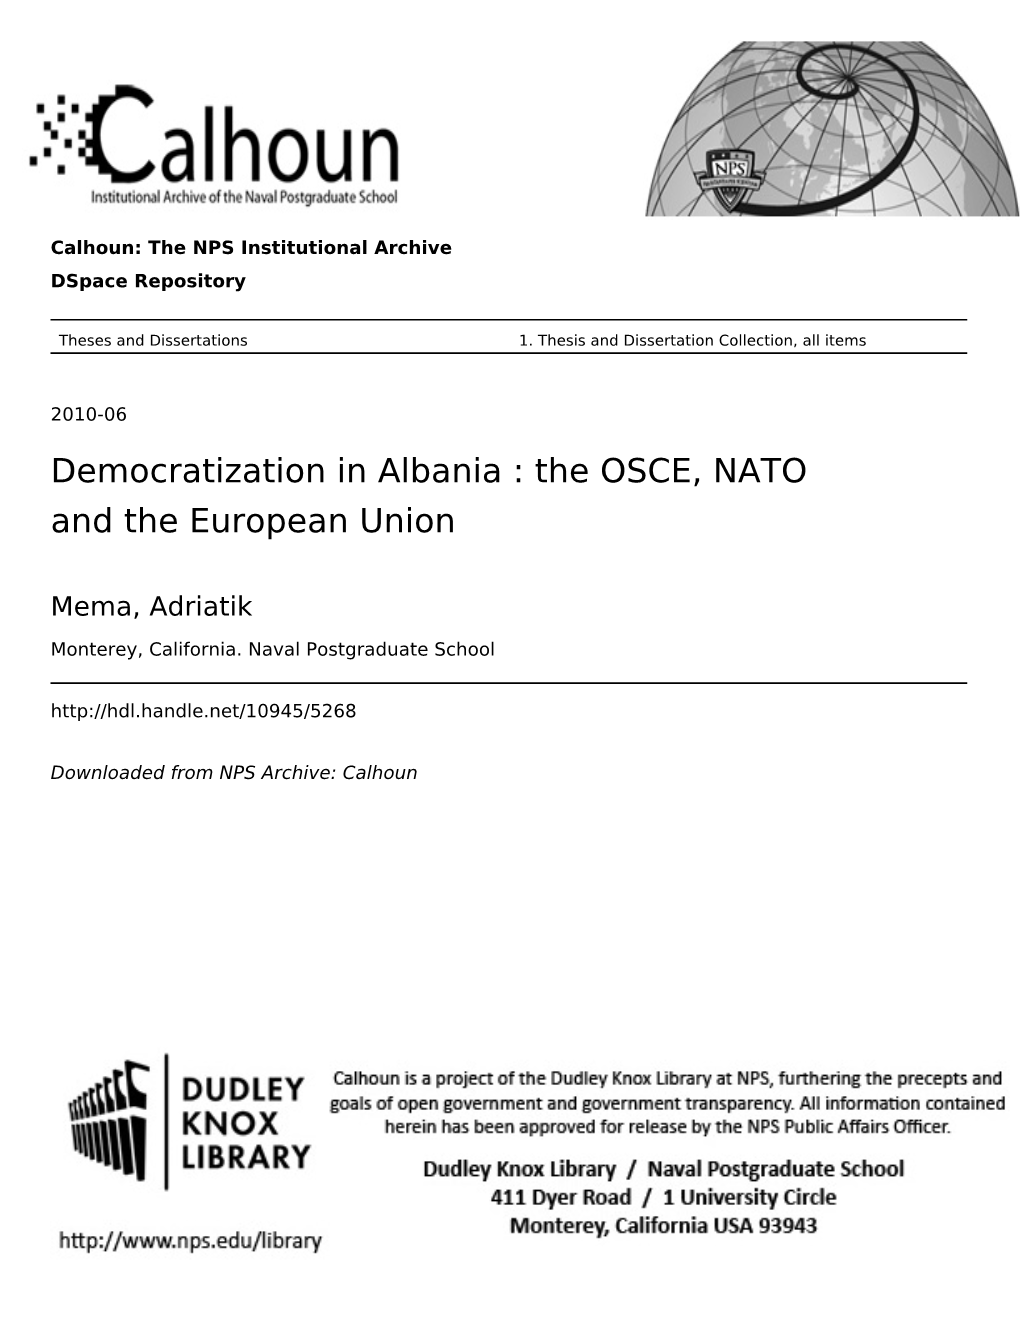 Democratization in Albania : the OSCE, NATO and the European Union